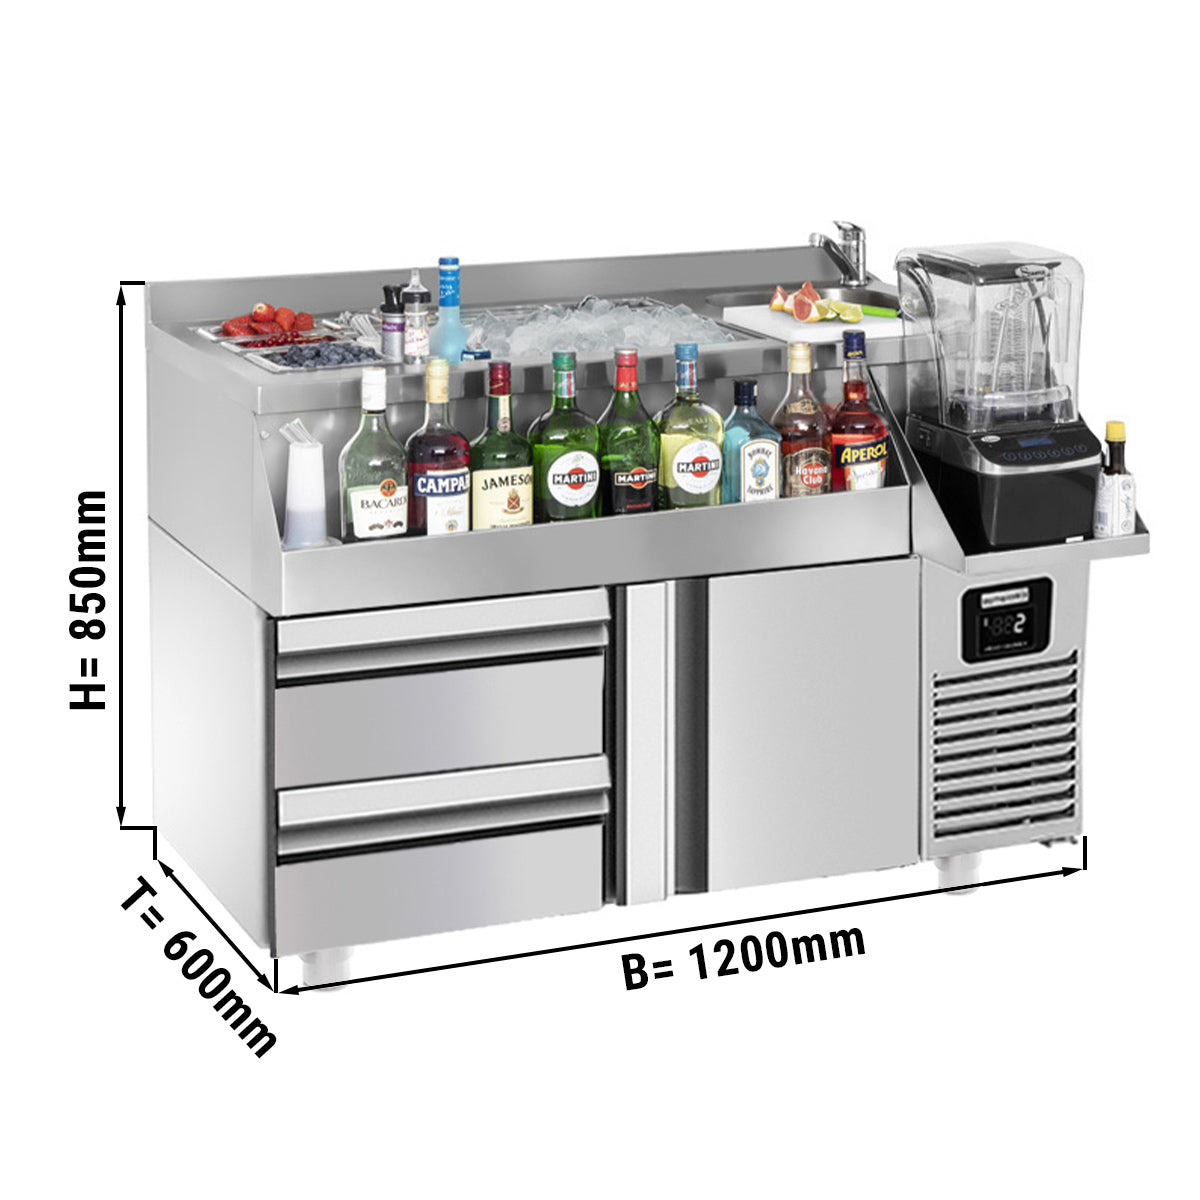 Хладилна маса за бар / напитки - 1,2 х 0,6 м - 150 литра - с 1 врата, 1 чекмедже 1/2 и рафтове